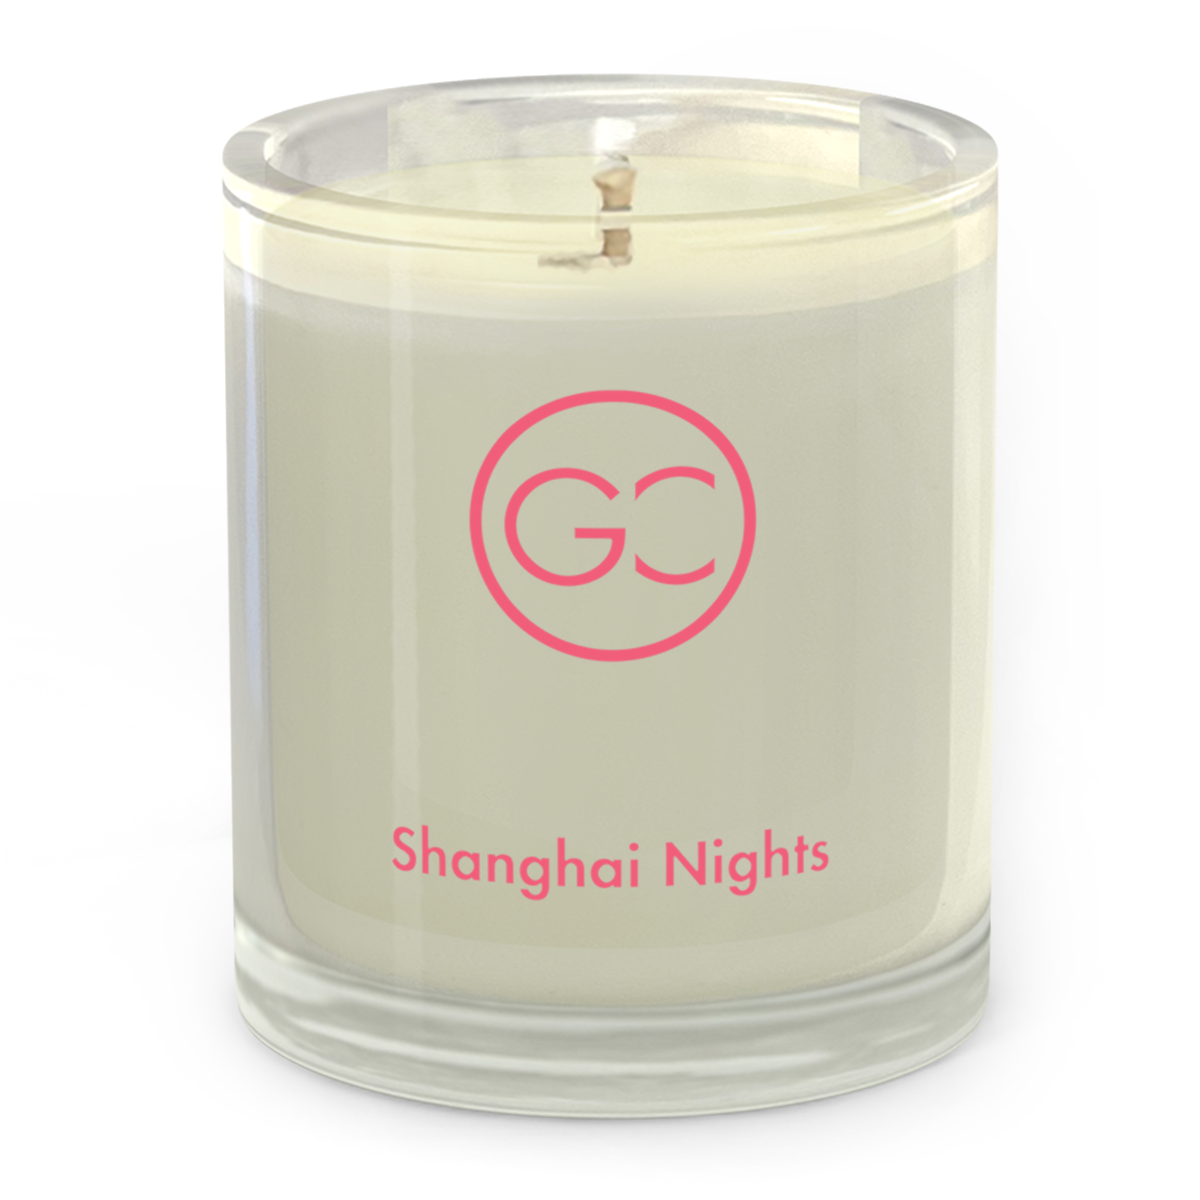 Shanghai Nights - Cedar &amp; Sandalwood Scented Soy Candle 55hr Burn